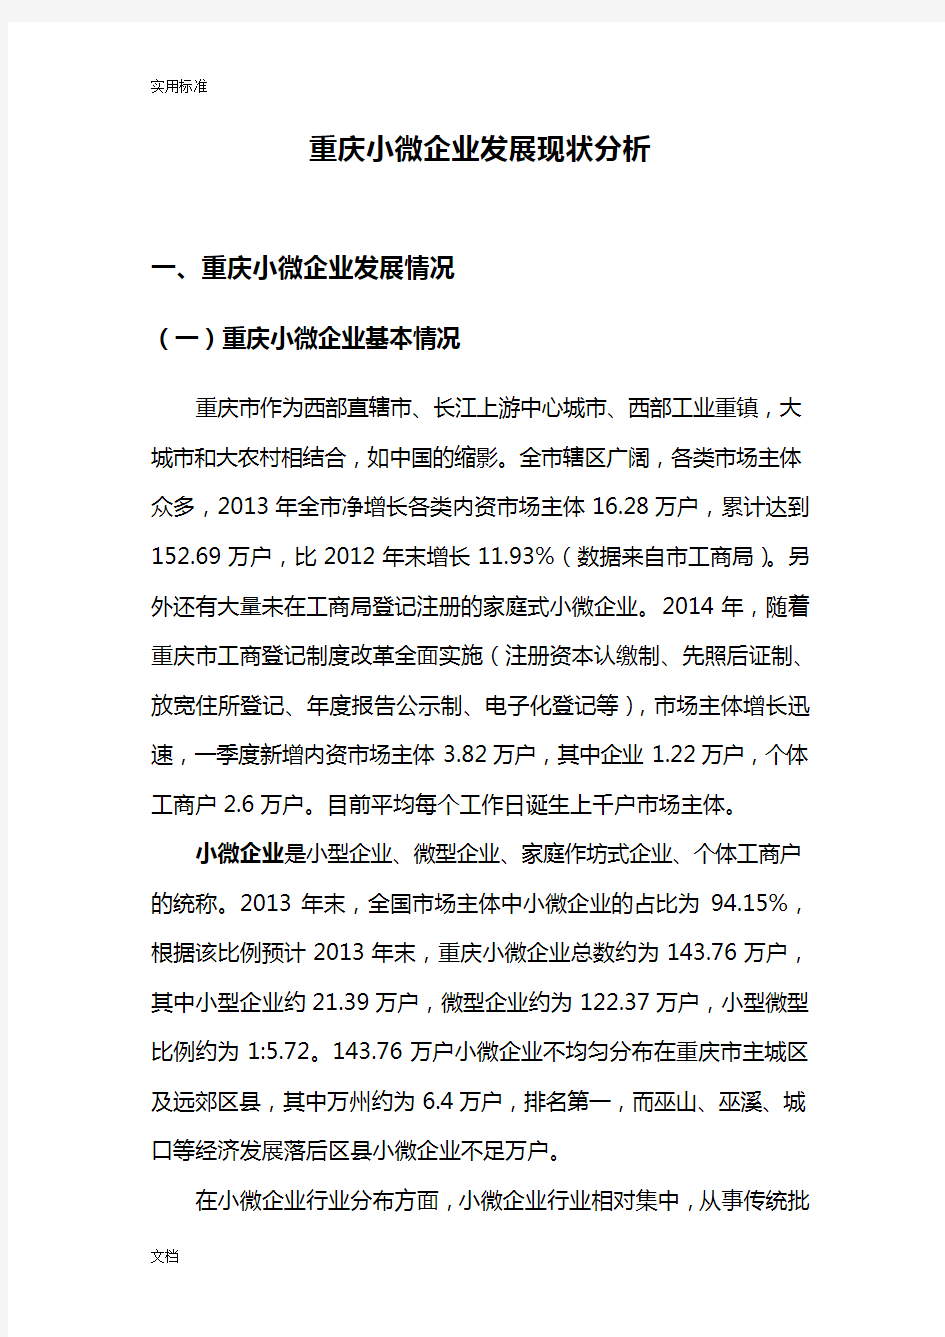 重庆小微企业发展现状分析报告